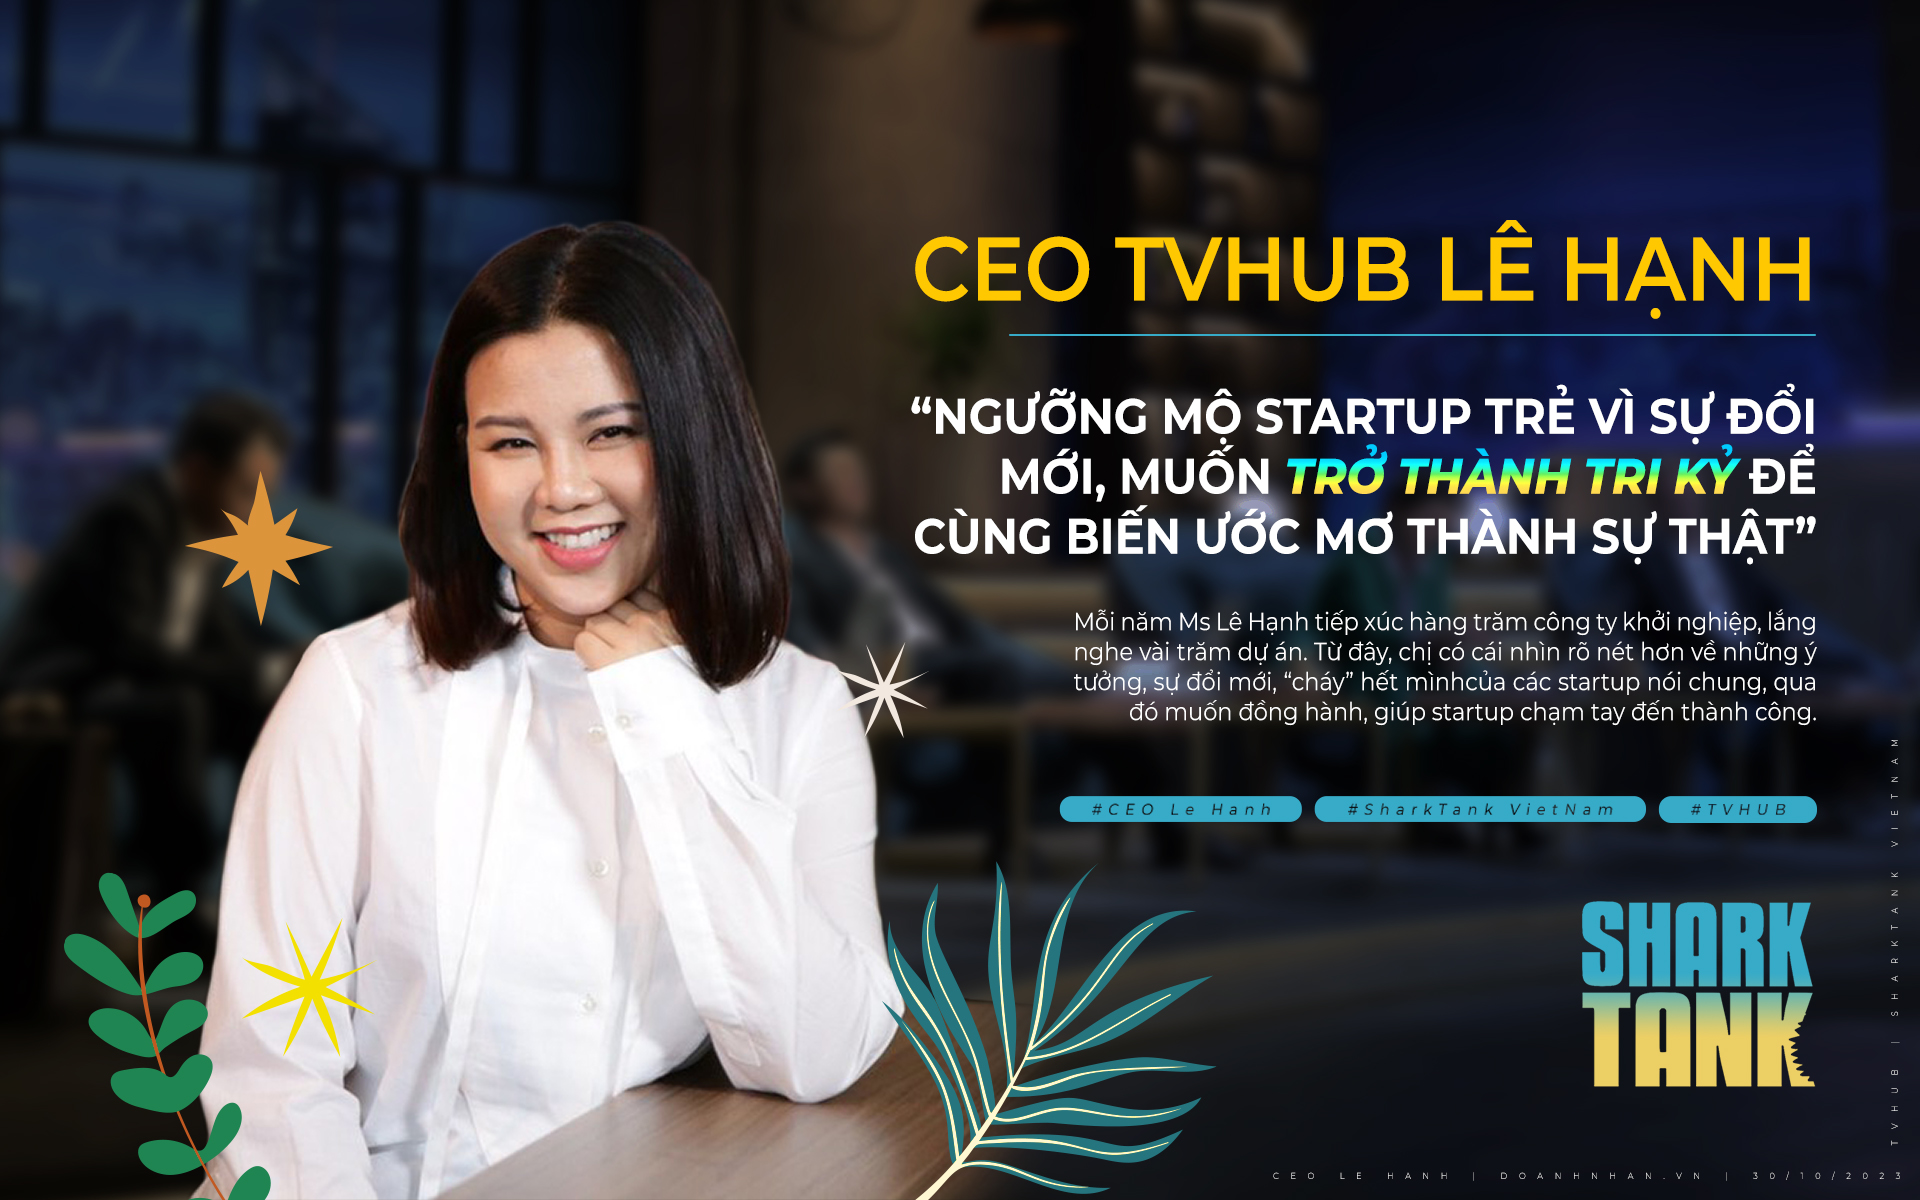 “B&#224; chủ” của Shark Tank Việt Nam L&#234; Hạnh: “Ngưỡng mộ startup trẻ v&#236; sự đổi mới, muốn trở th&#224;nh tri kỷ để c&#249;ng biến ước mơ th&#224;nh sự thật” - Ảnh 1